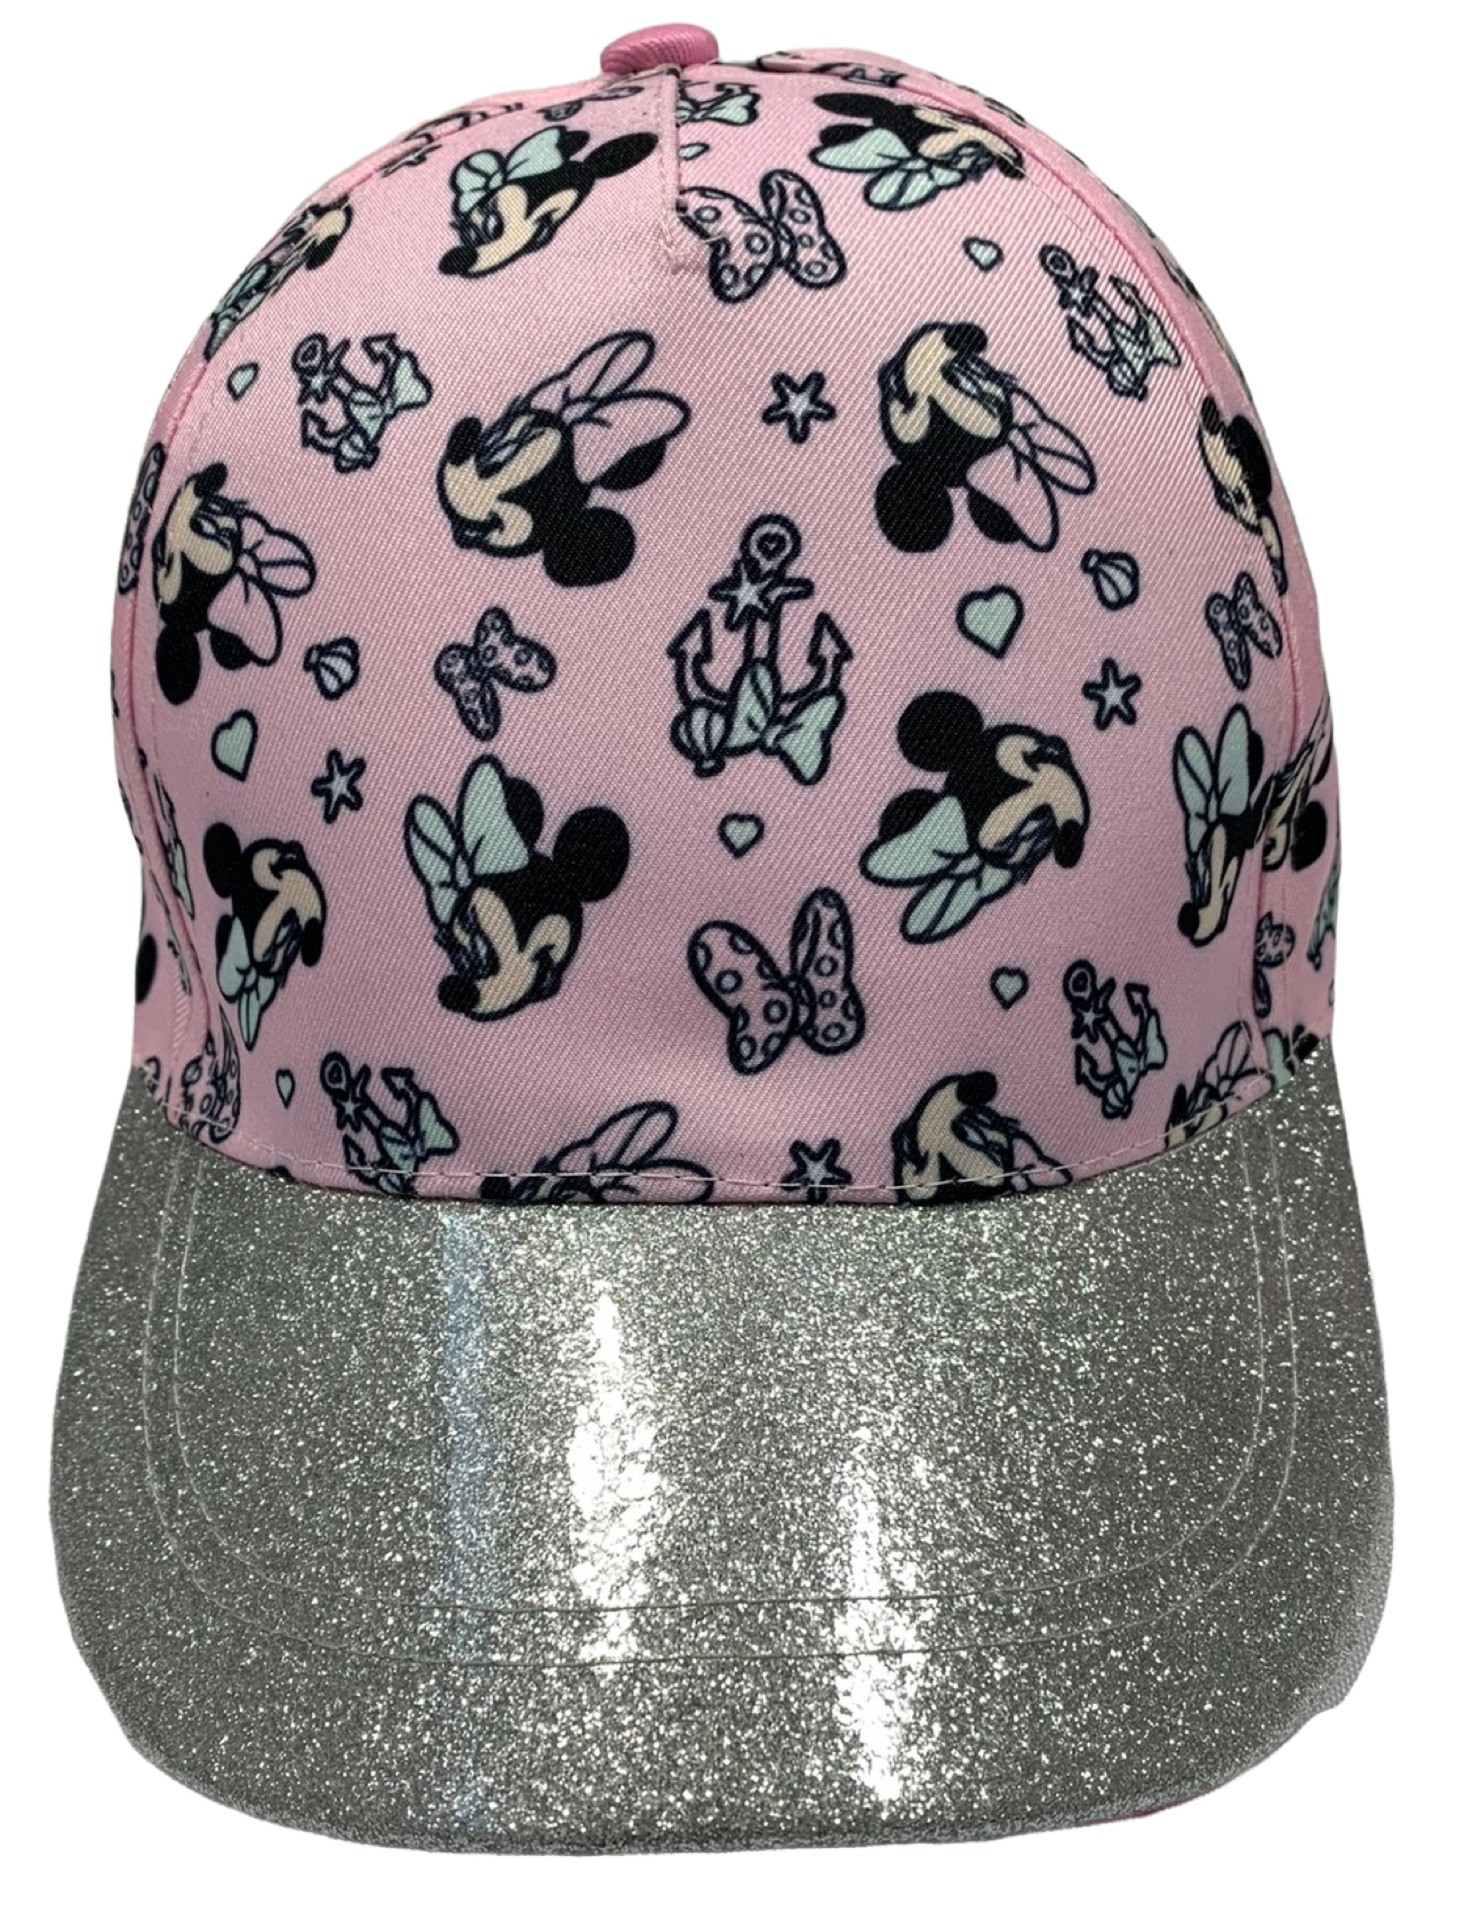 E-shop EPlus Dievčenská šiltovka - Minnie Mouse glitrovaná ružová Veľkosť šiltovka: 54